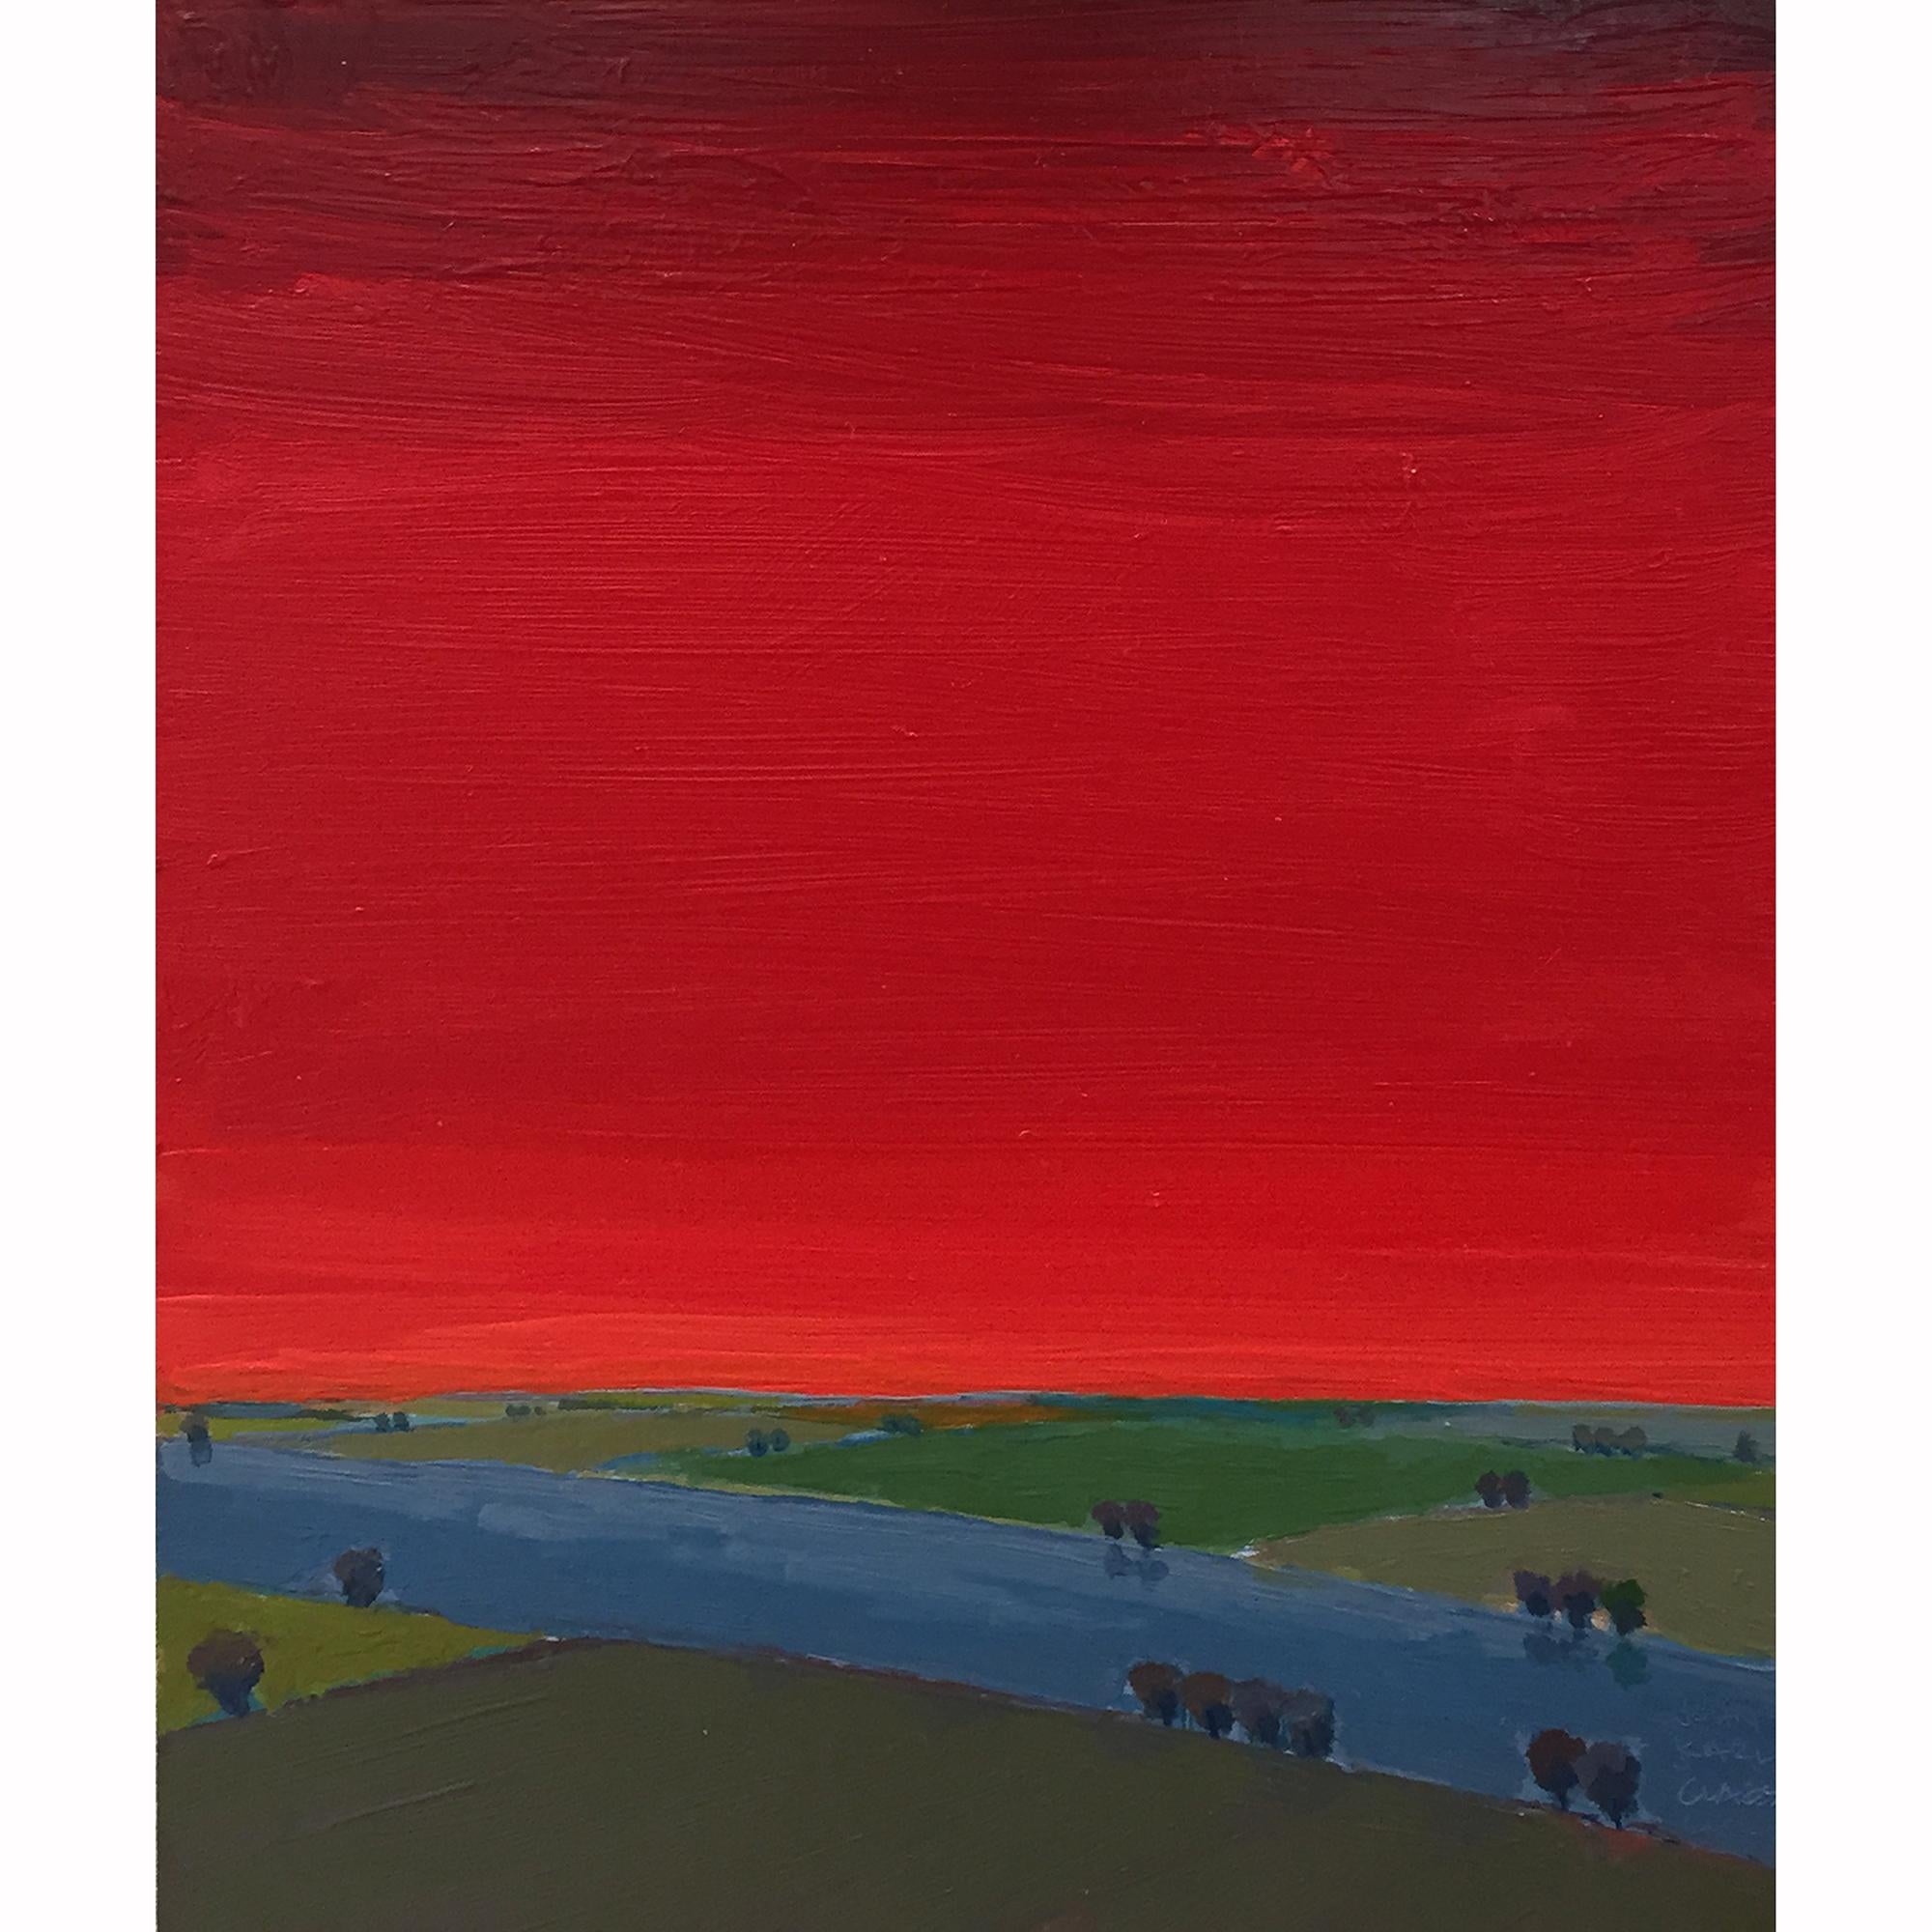 John Karl Claes Landscape Painting - Primary Landscape (Red)